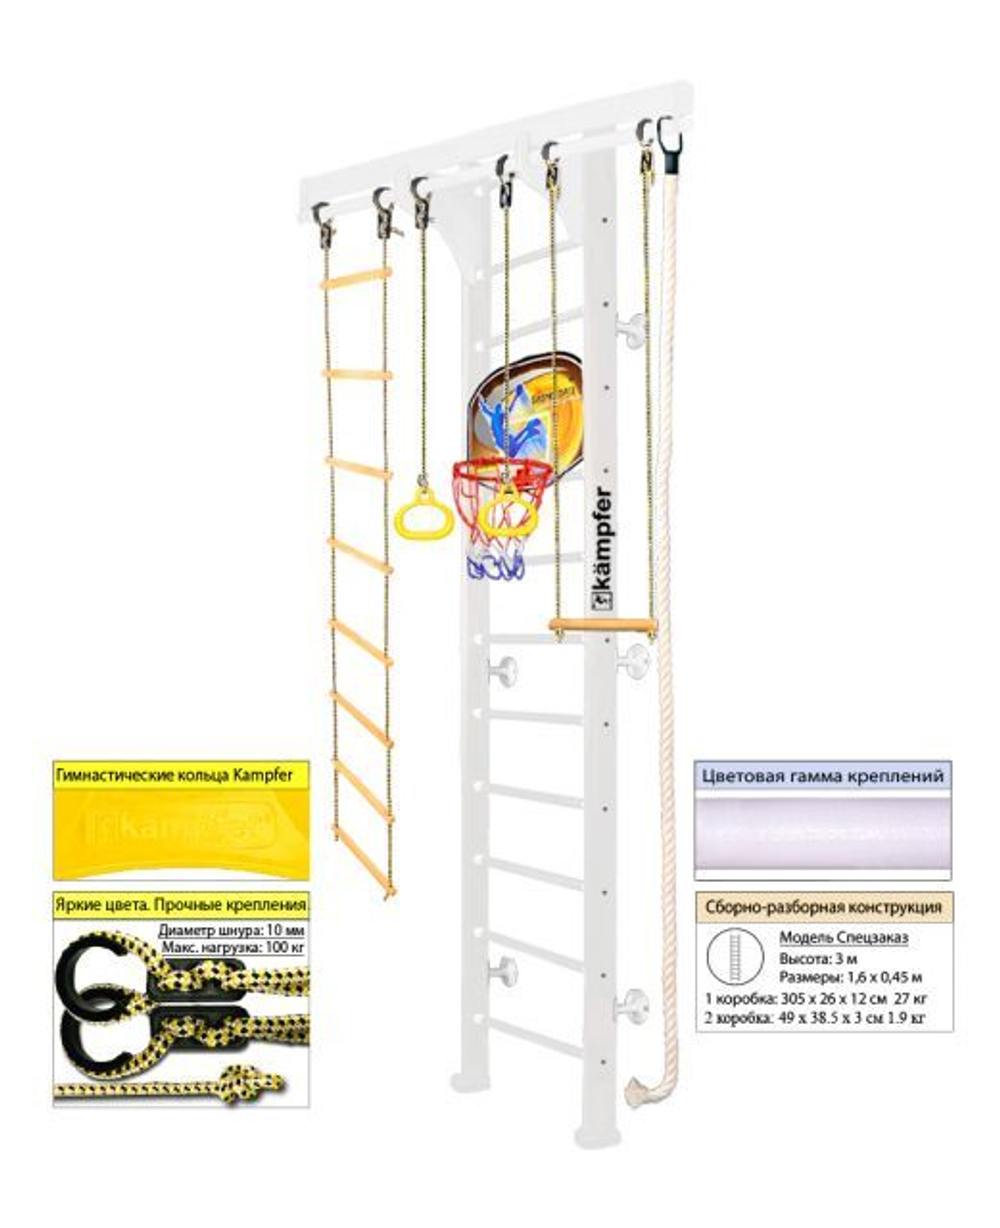 Шведская стенка Kampfer Wooden Ladder Wall Basketball Shield Стандарт с матом